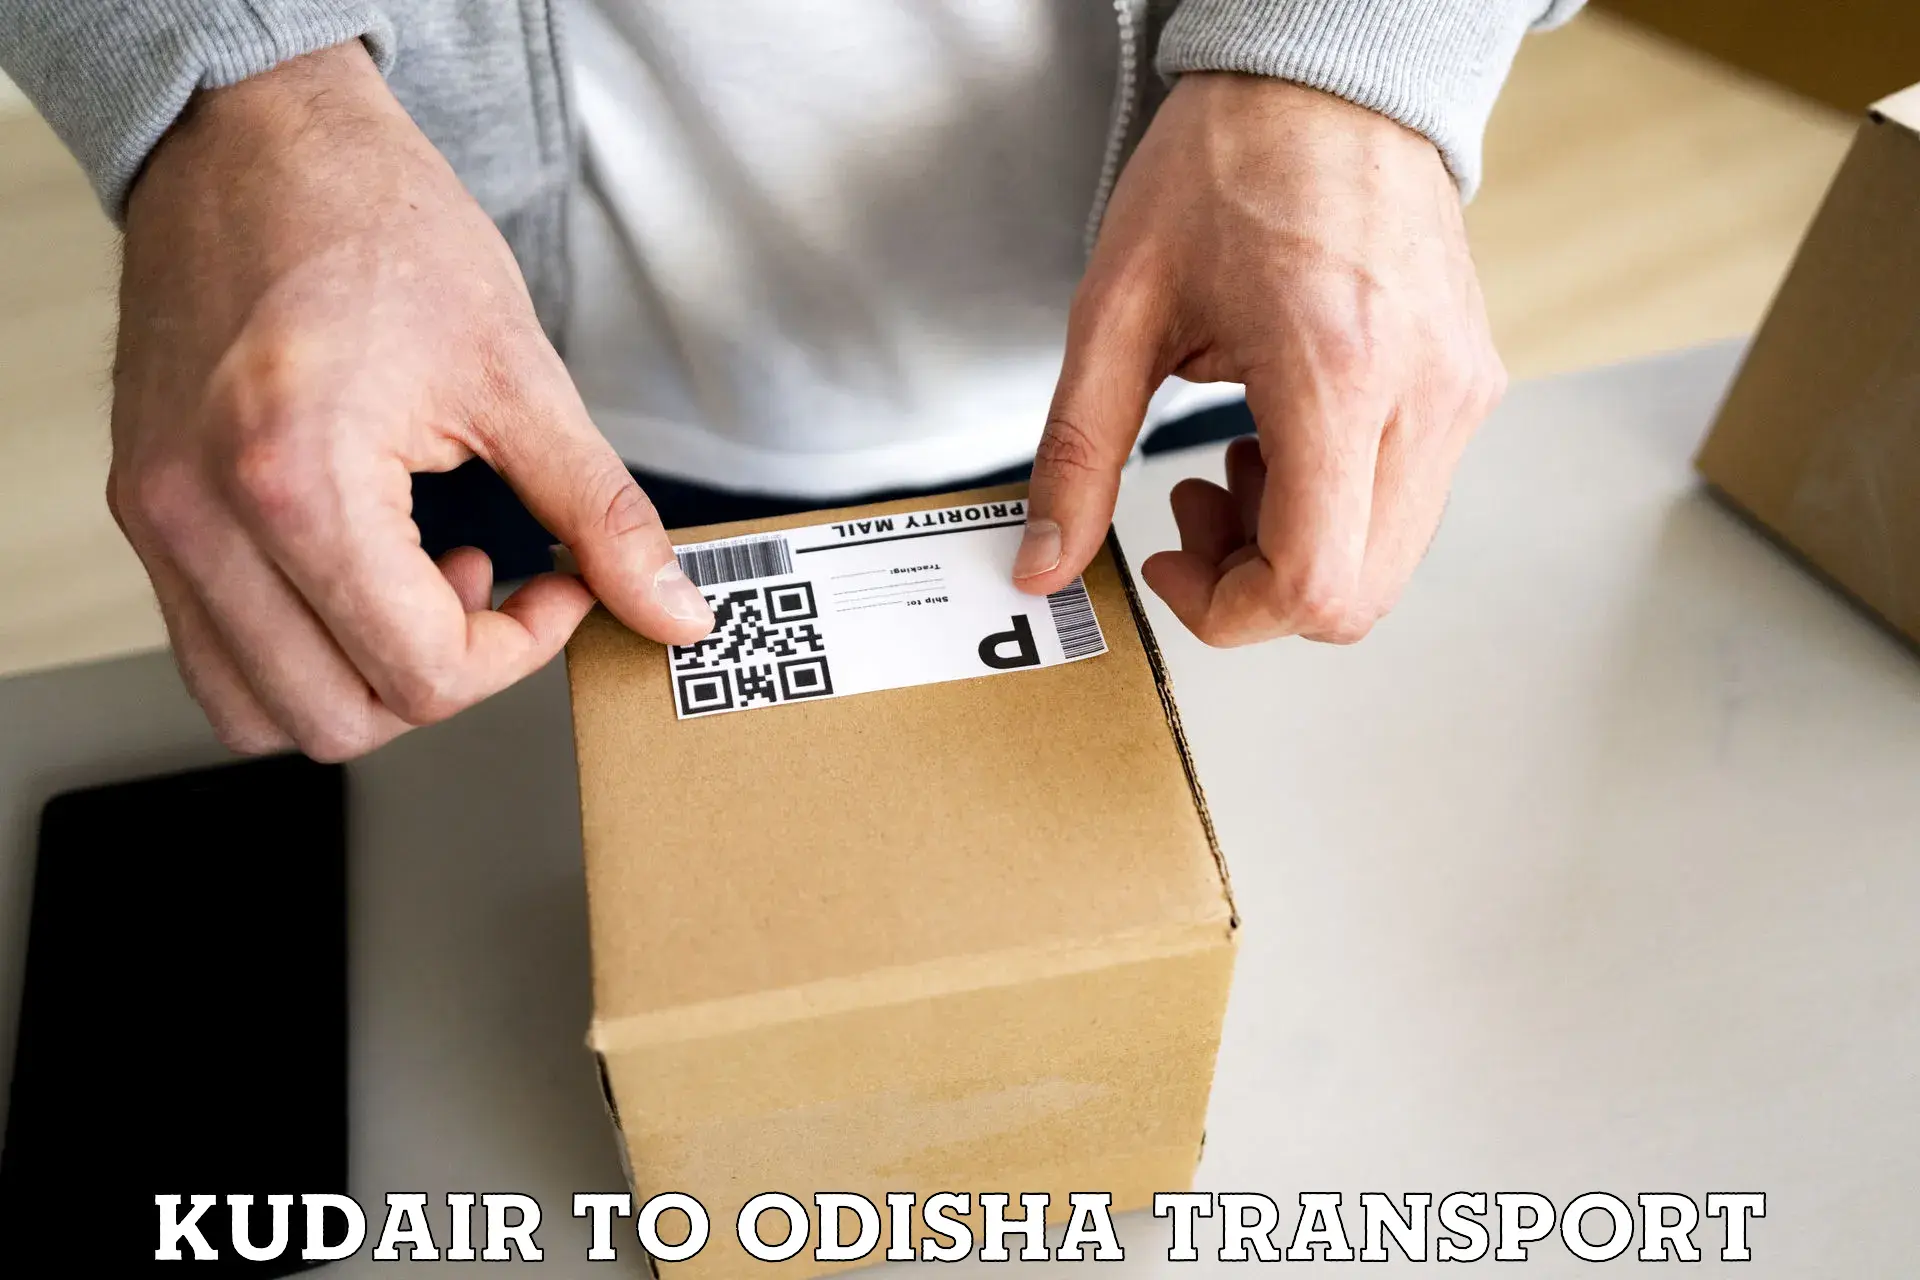 Online transport booking Kudair to Galleri